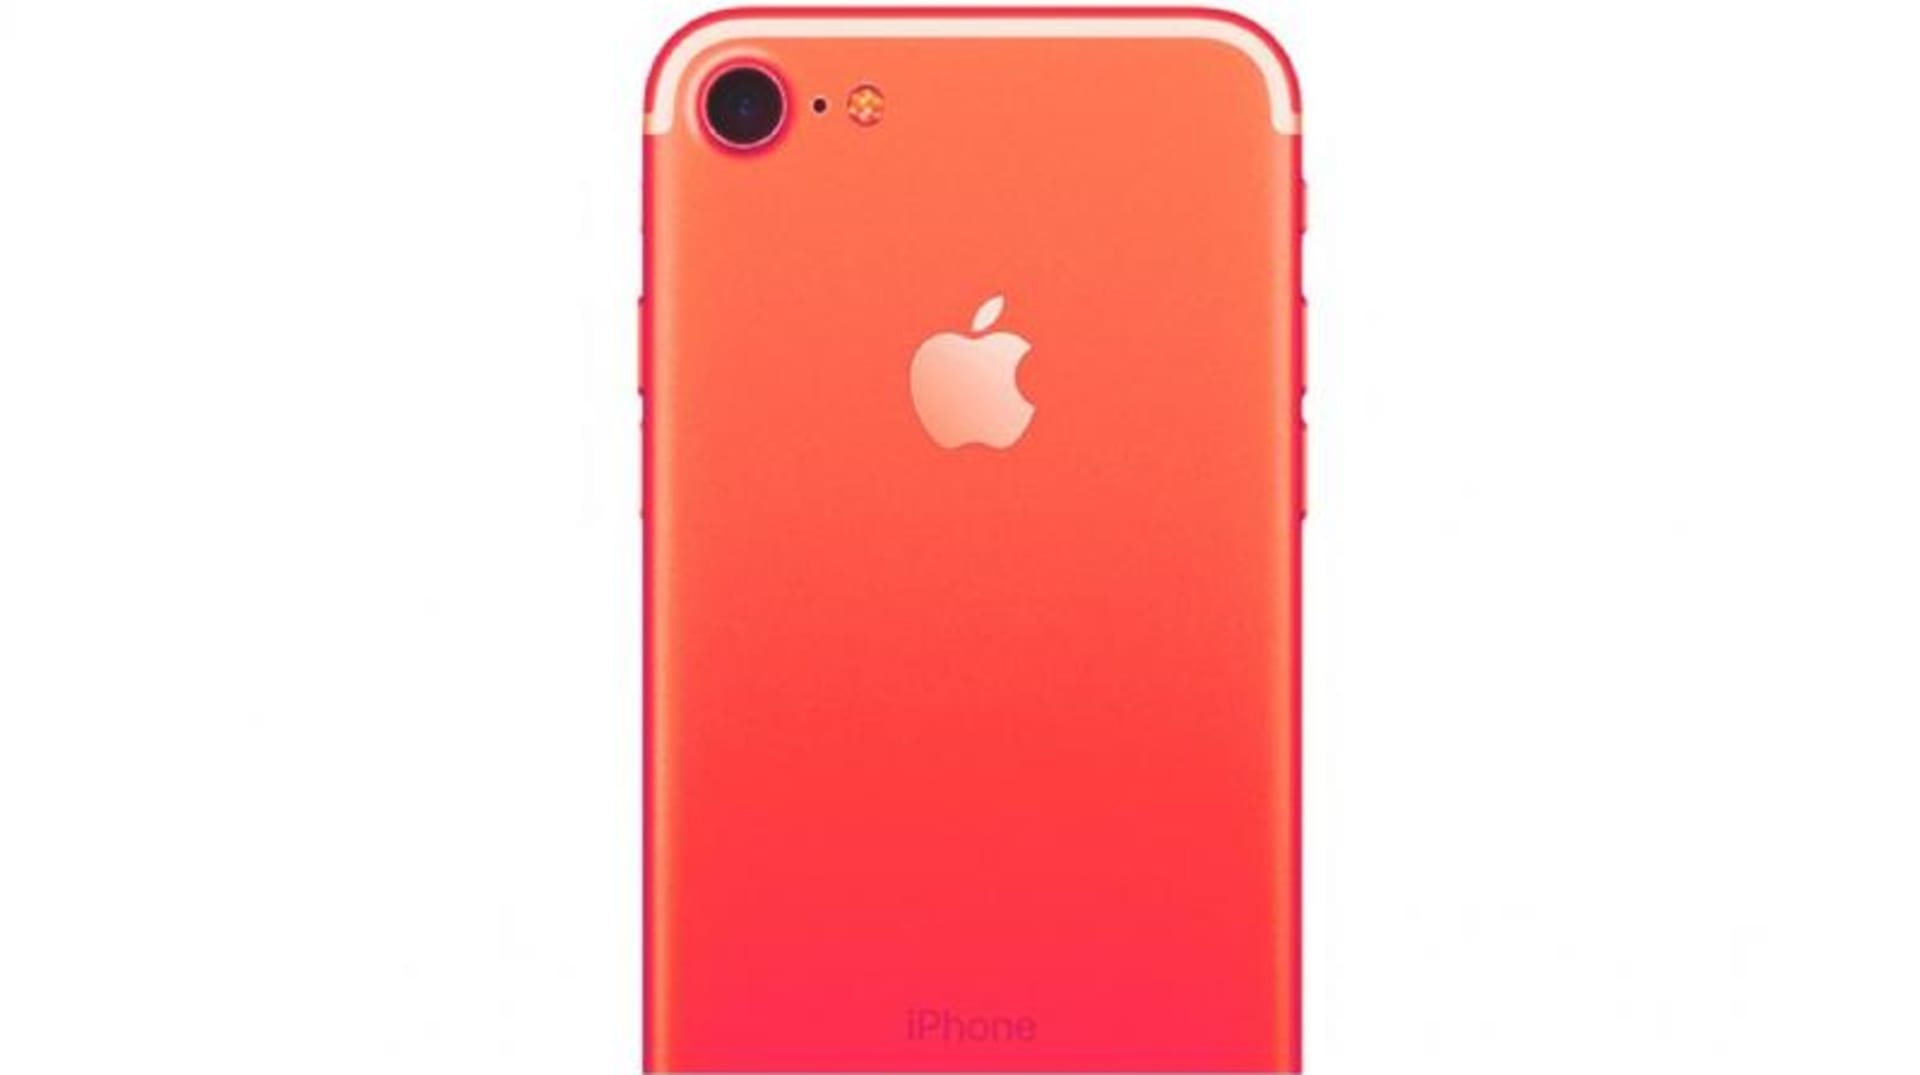 Takto by měl vypadat iPhone 7 v novém červeném provedení.